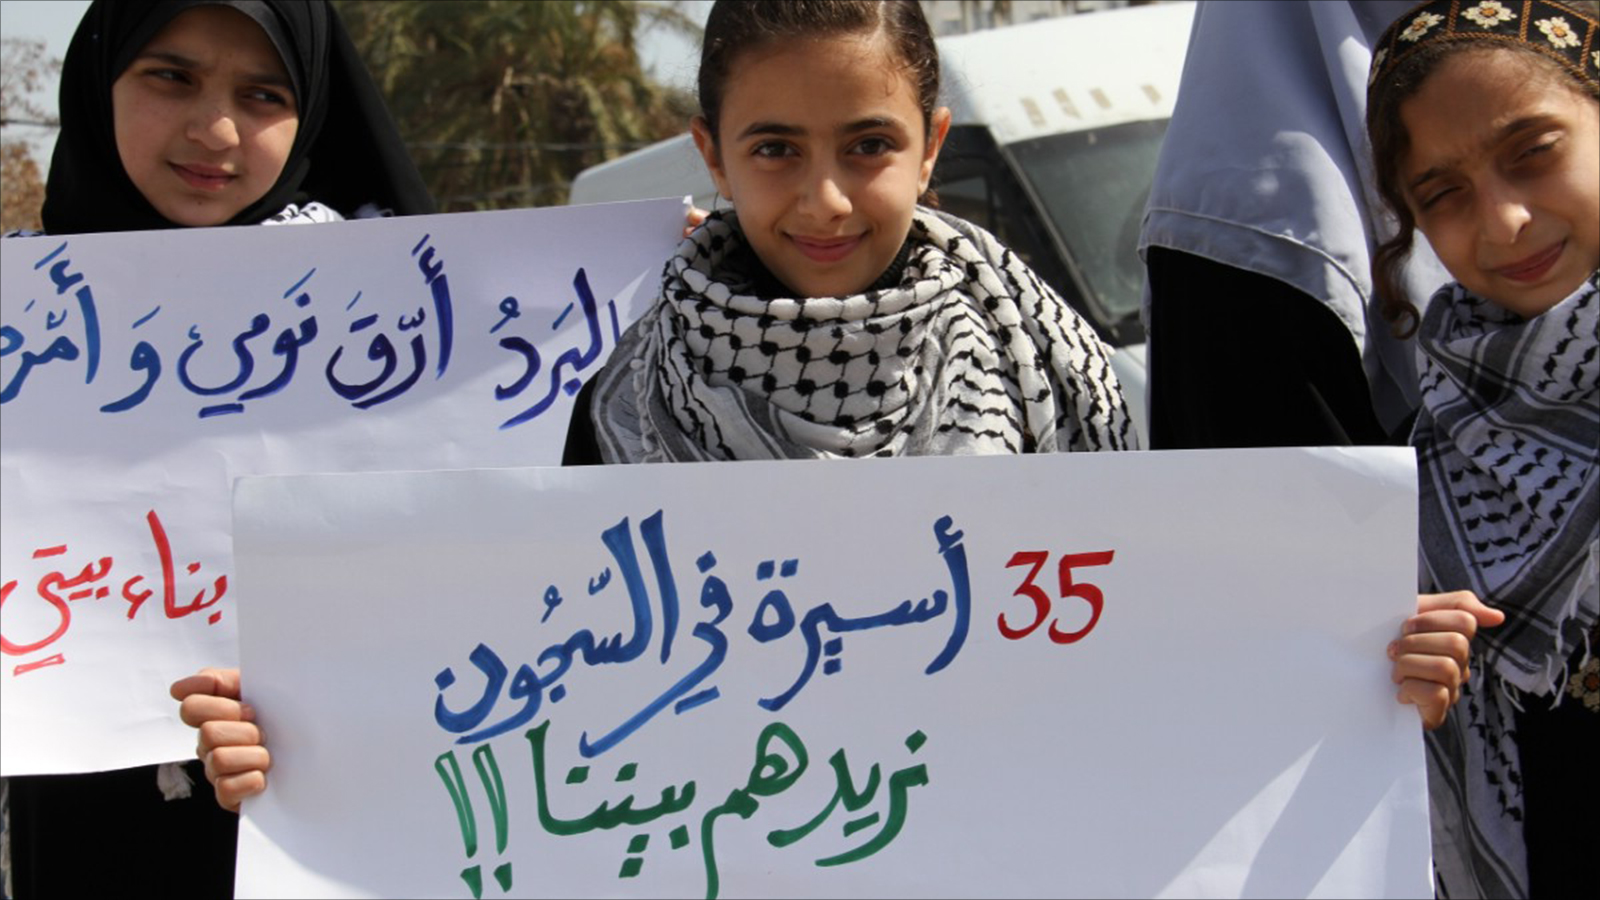 ‪طفلة فلسطينية تحمل لافتة تذّكر بوجود 35 أسيرة‬ (الجزيرة)